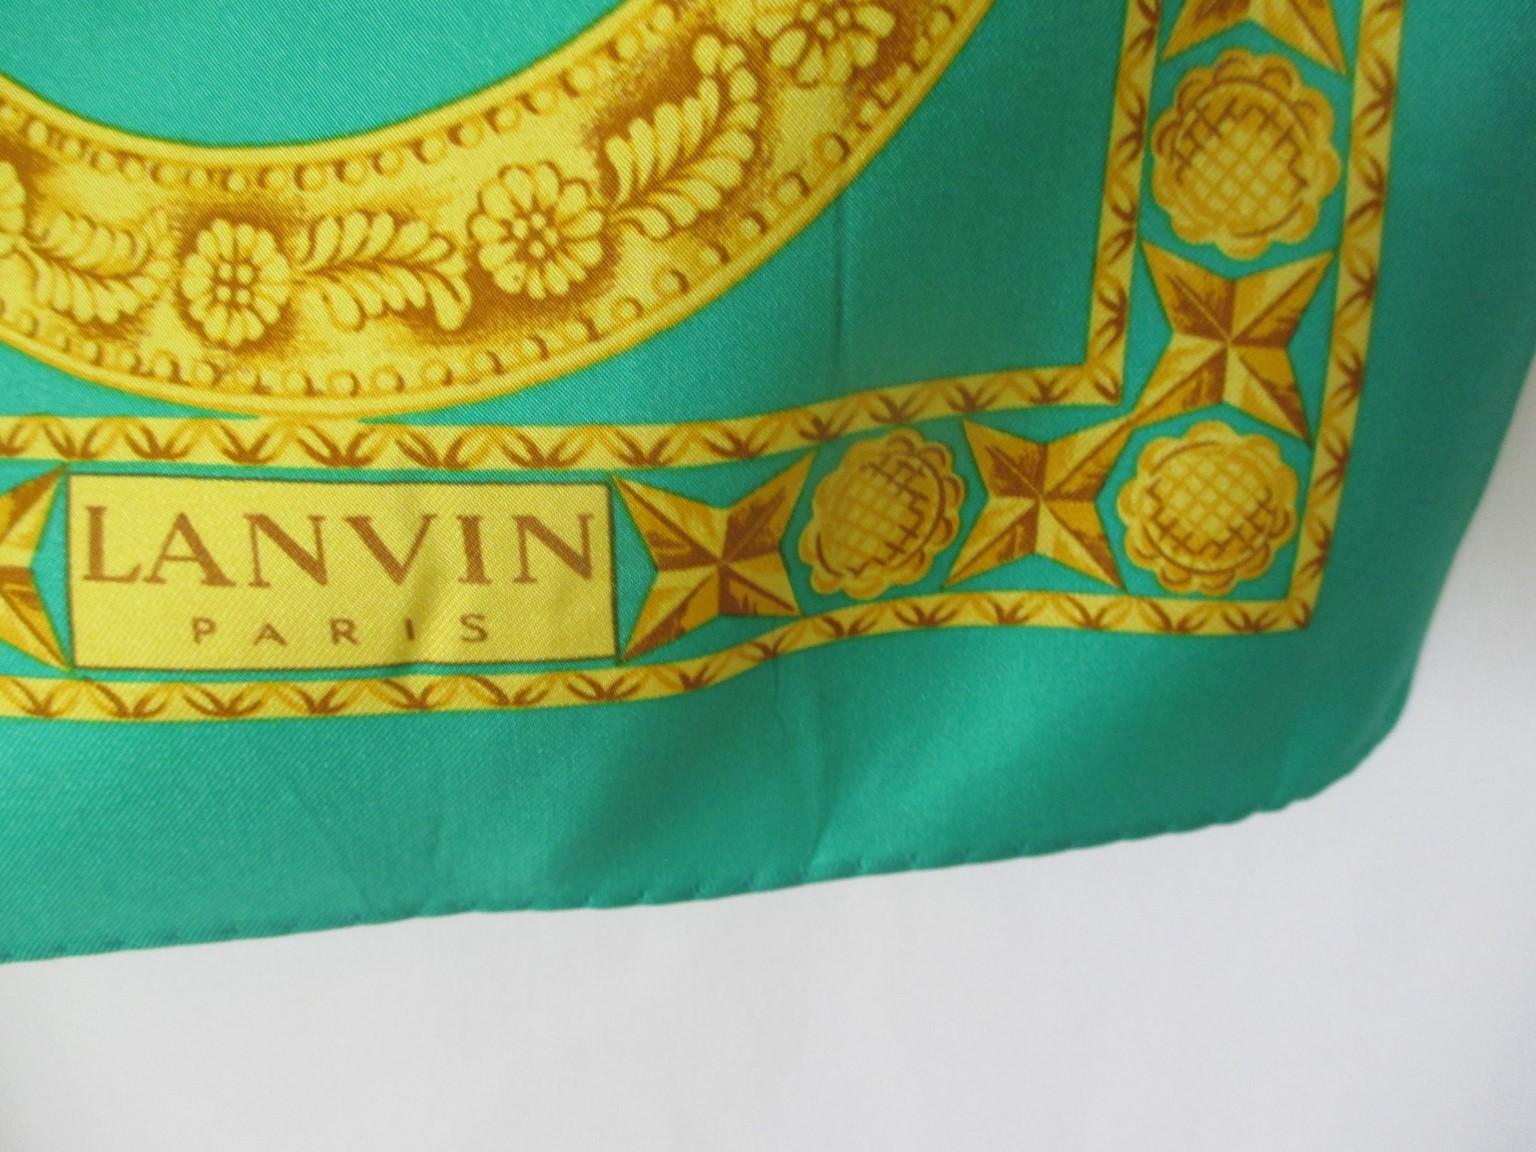 Nous proposons d'autres écharpes vintage Hermès, Cartier, consultez notre boutique en ligne.

Ce foulard Lanvin vintage est un véritable foulard en soie de collection, à porter, à montrer ou à encadrer. 
La couleur parfaite pour accessoiriser votre